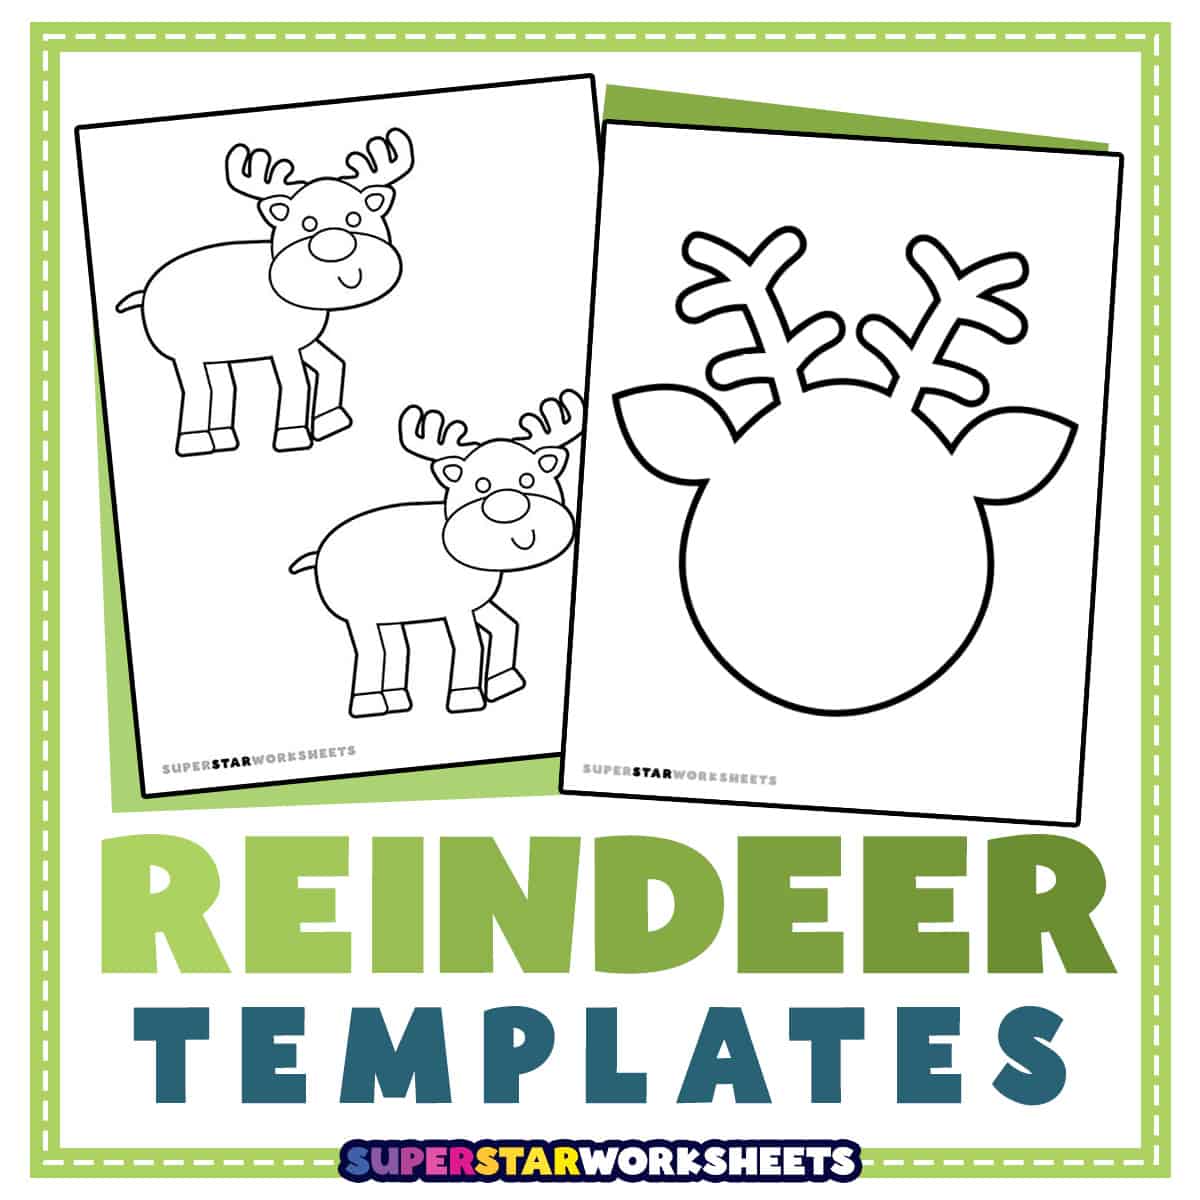 reindeer pattern printable